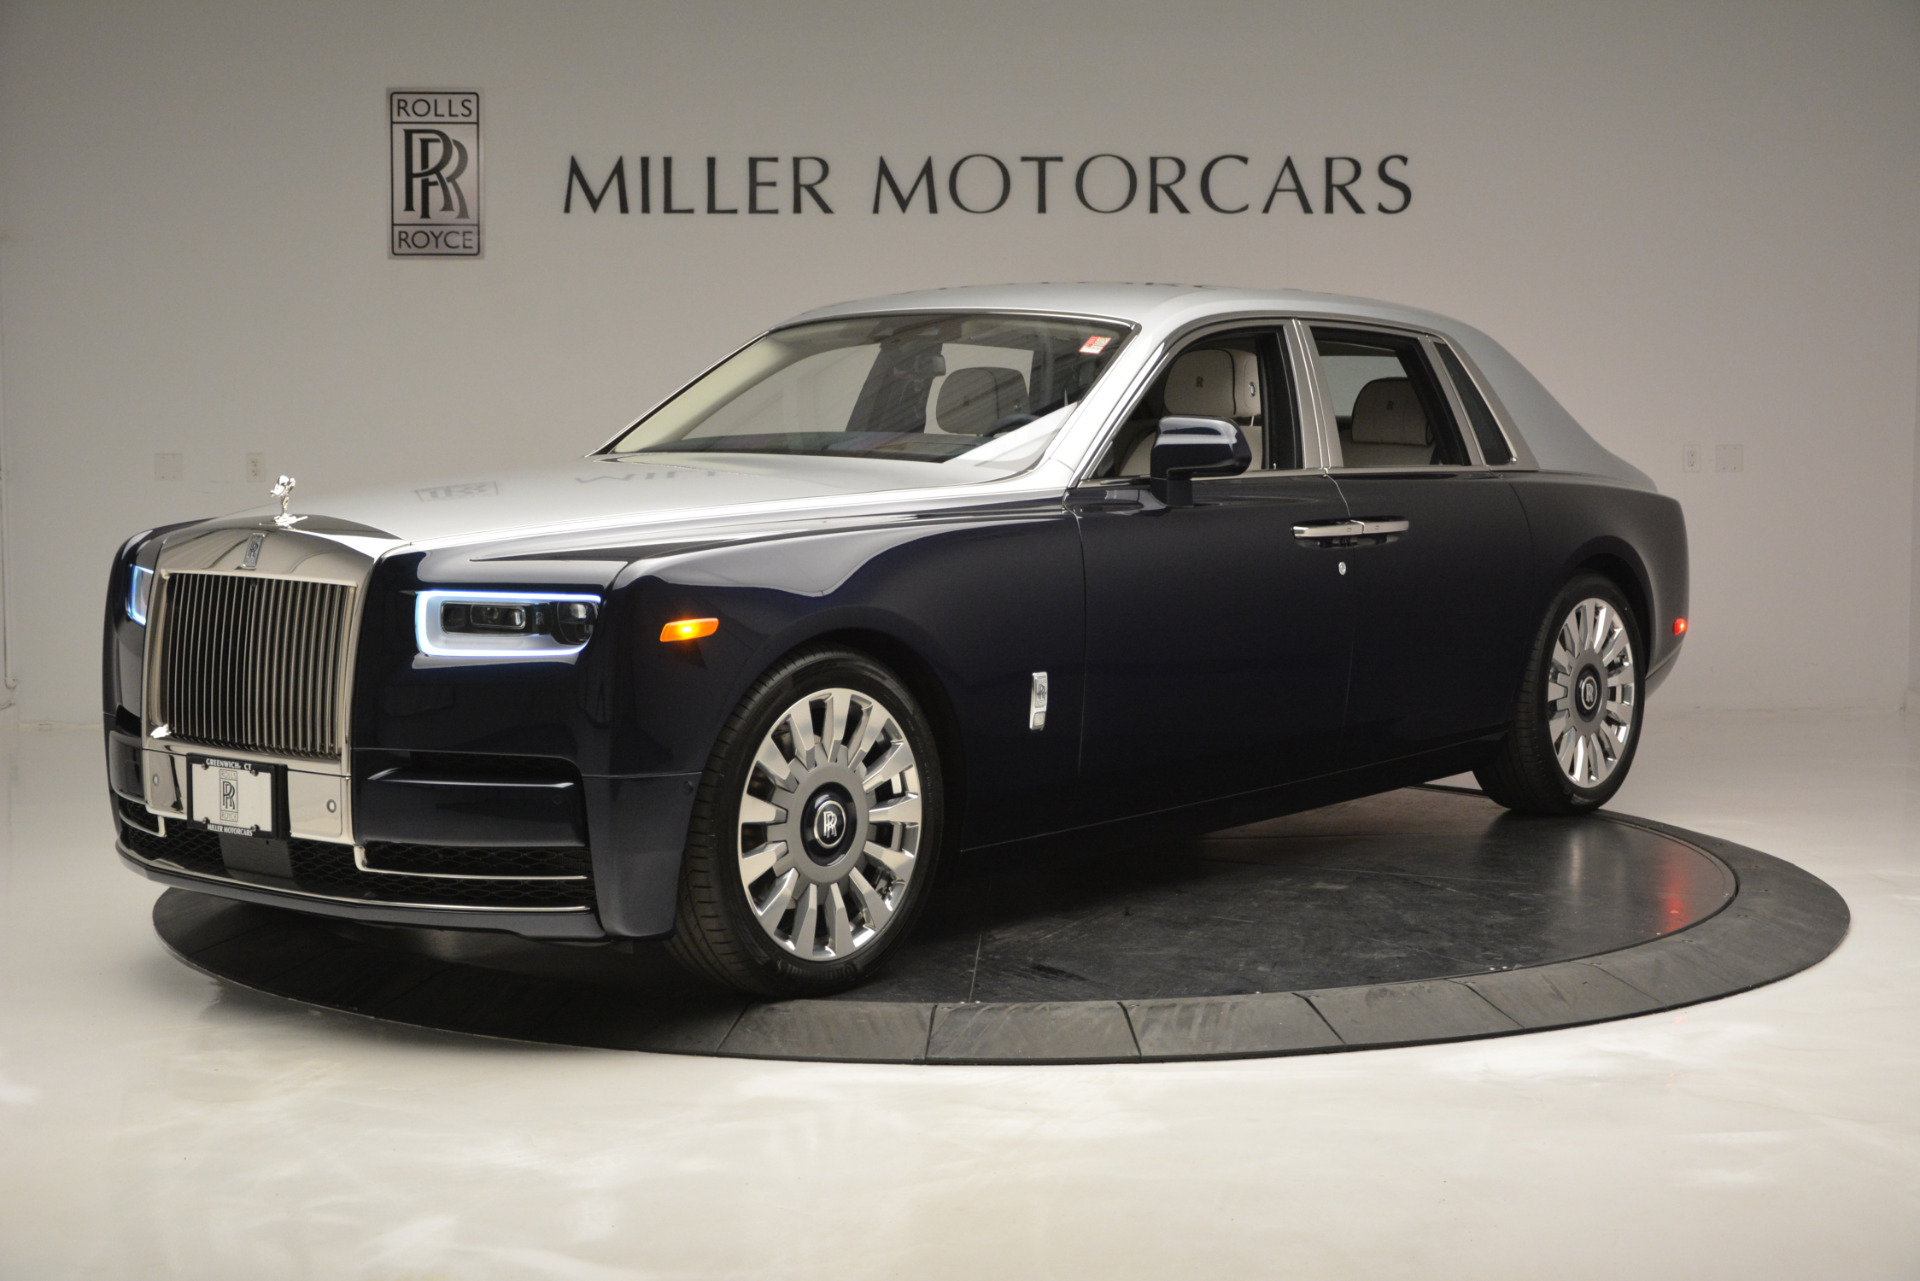 New 2019 Rolls Royce Phantom For Sale Miller Motorcars